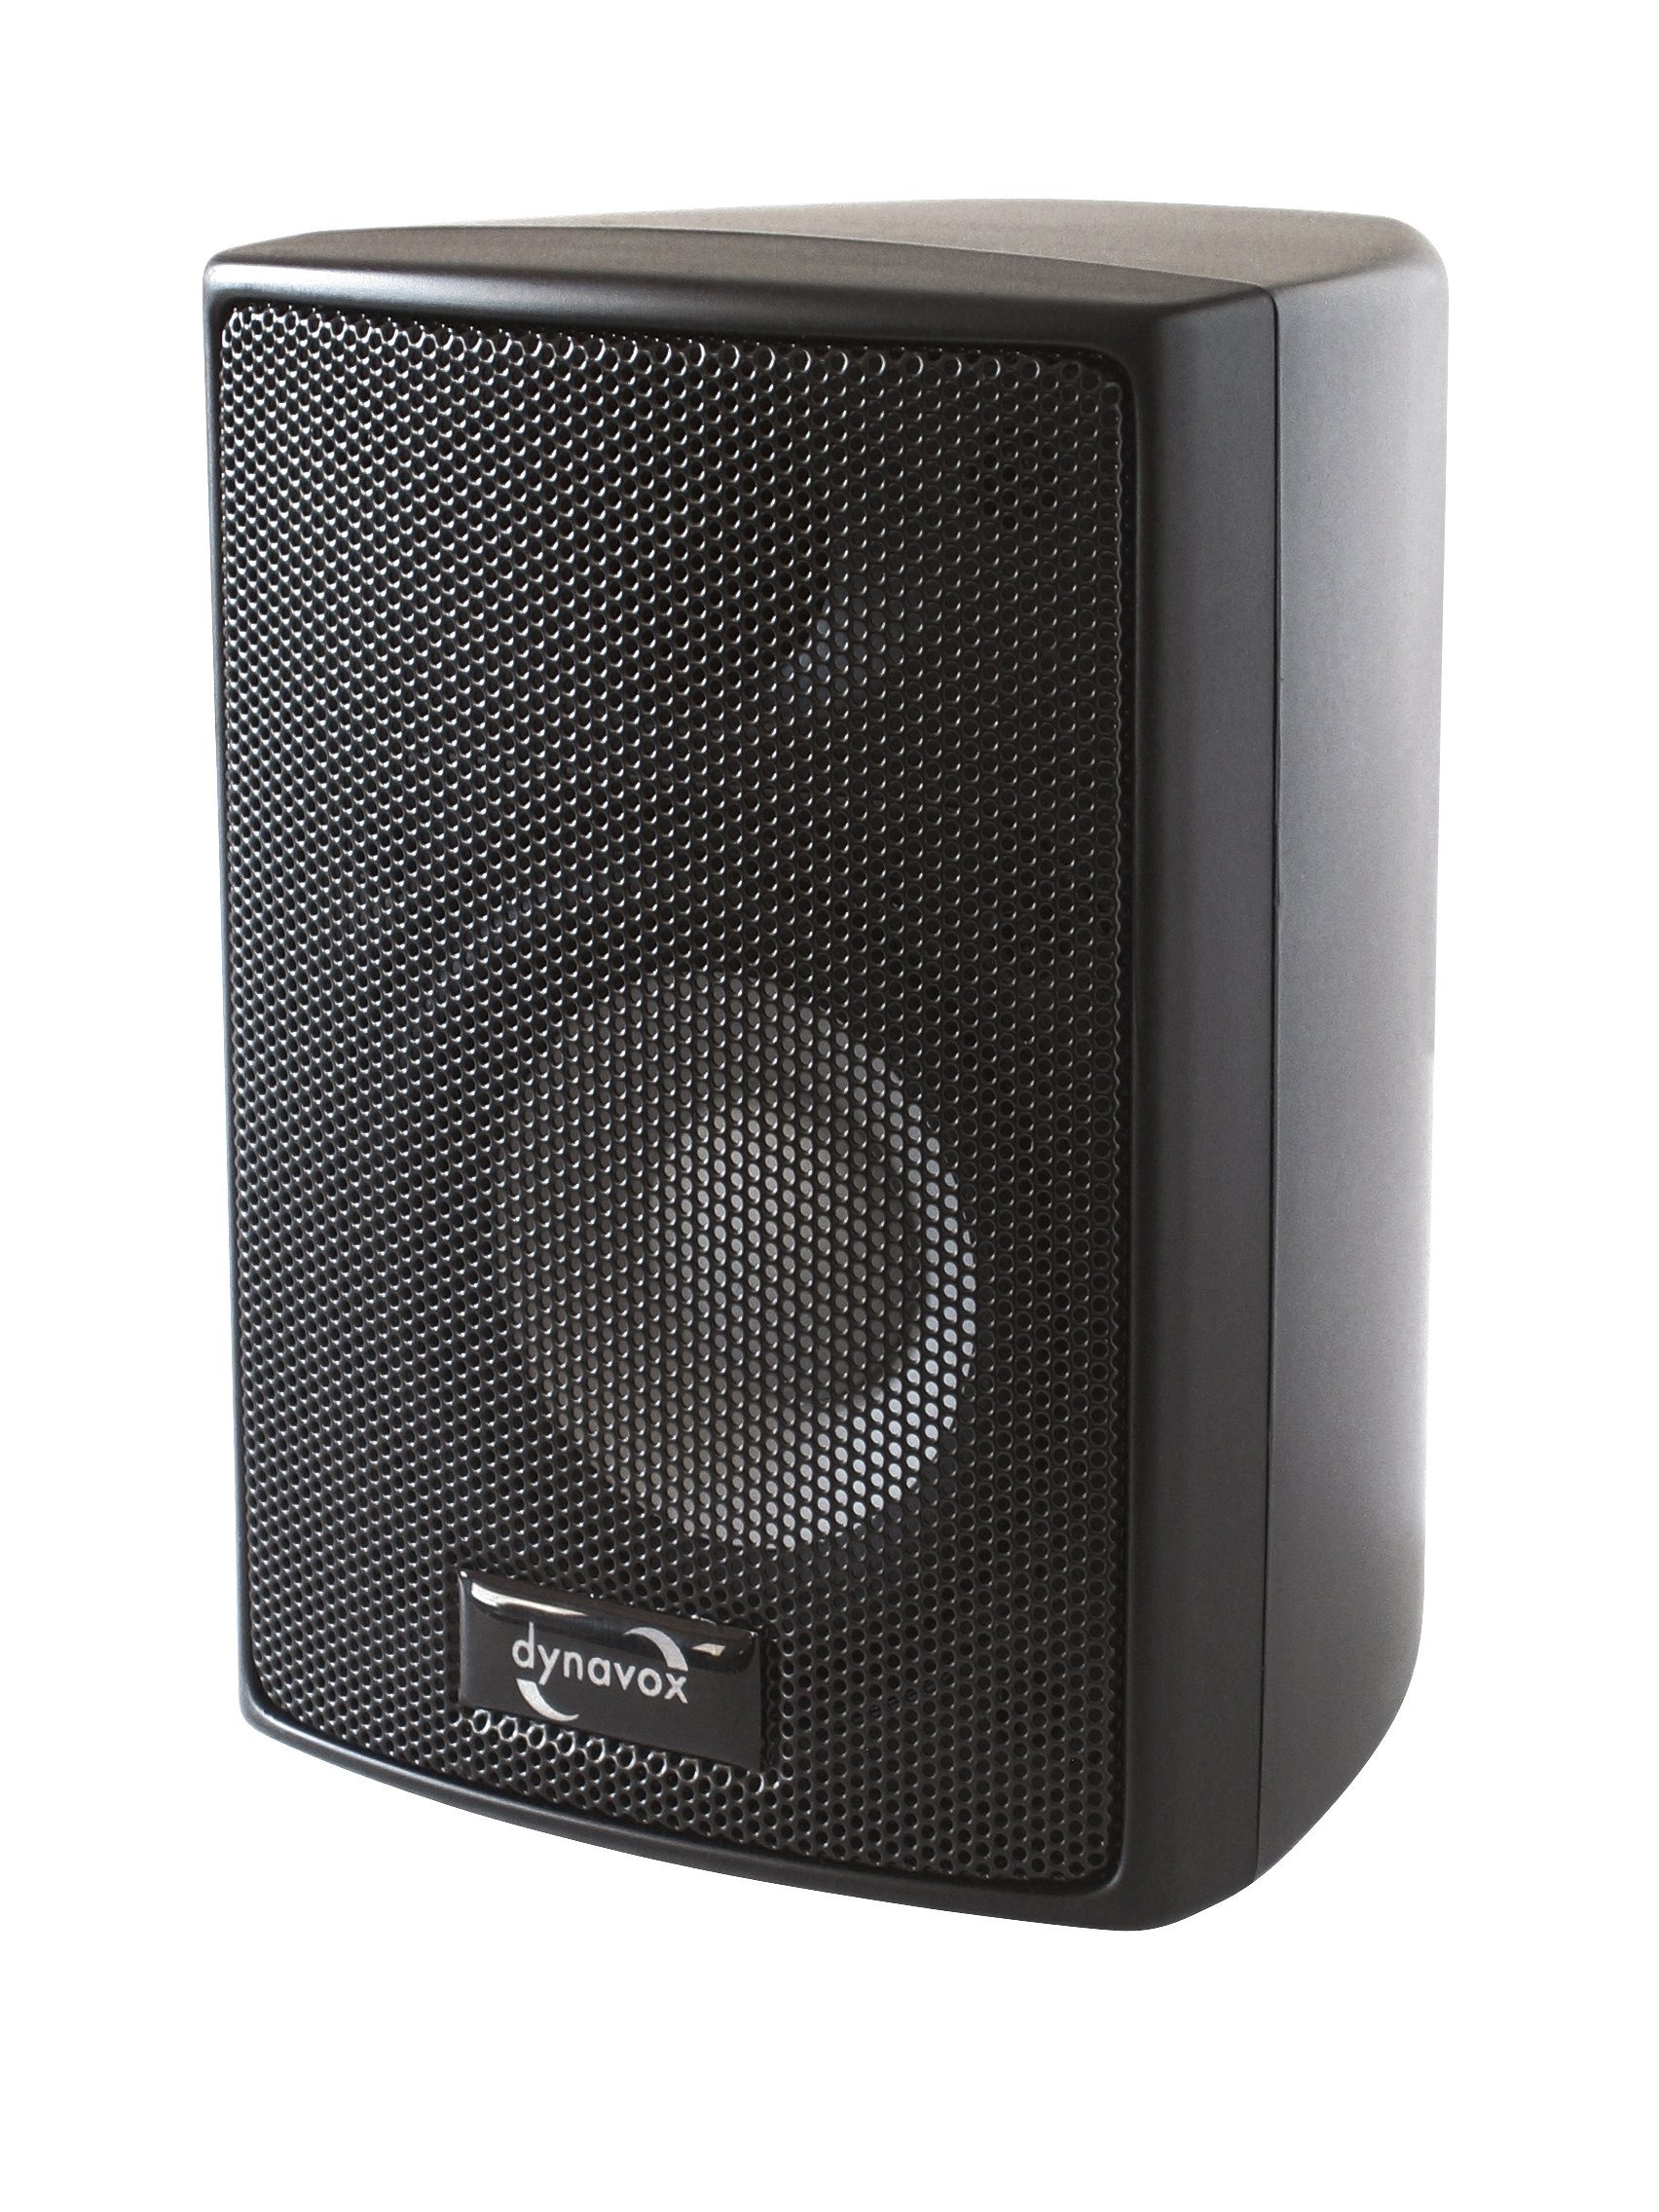 Dynavox Schwarz Lautsprecher 301 Büro, Paar, oder Surround-Box, AS kompakte W, Heimkino Wandmontage) (60 für